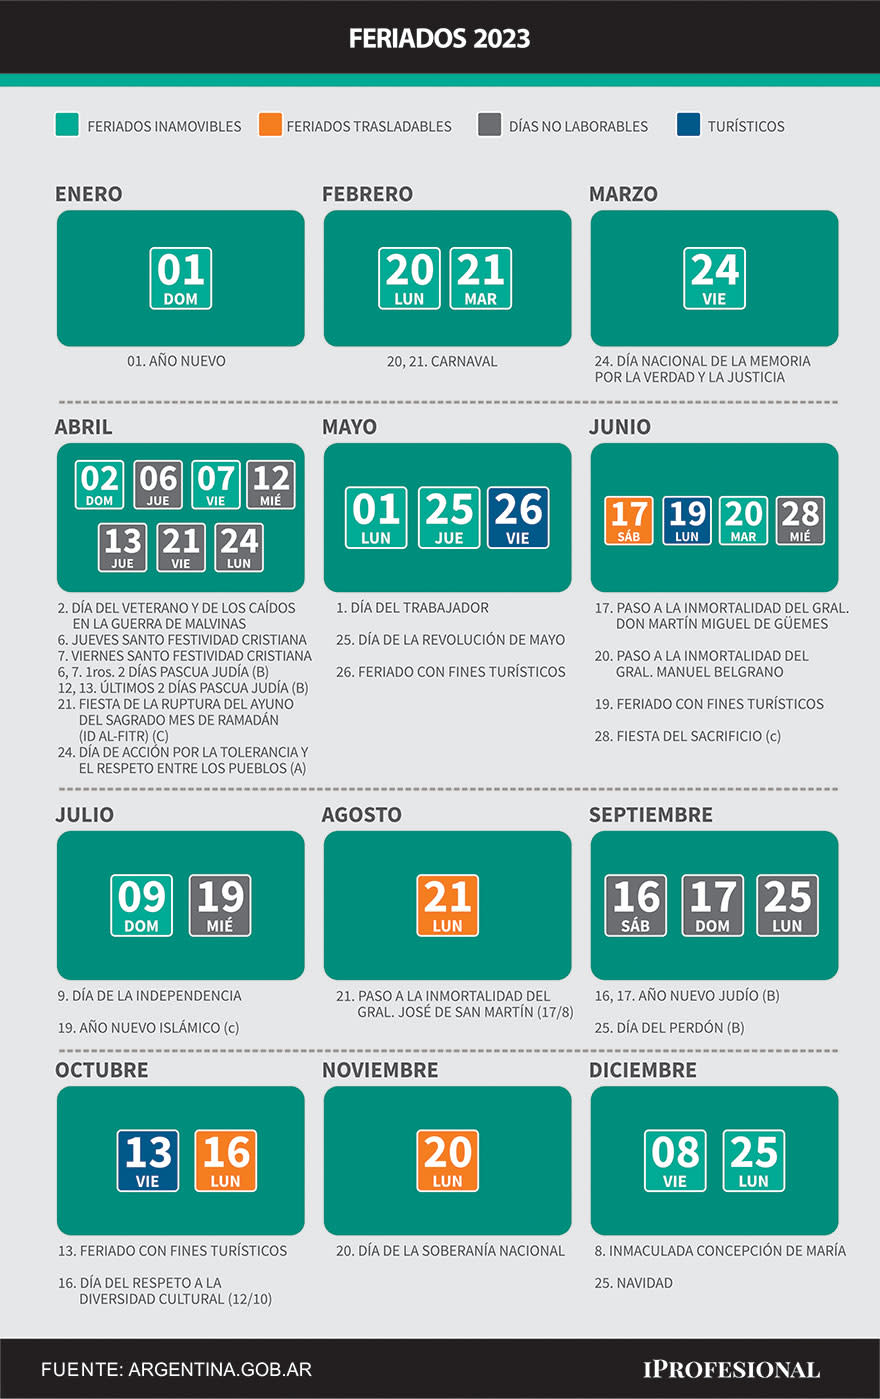 Todos los feriados y días no laborables de 2023 de acuerdo al calendario oficial del Ministerio del Interior de la Nación